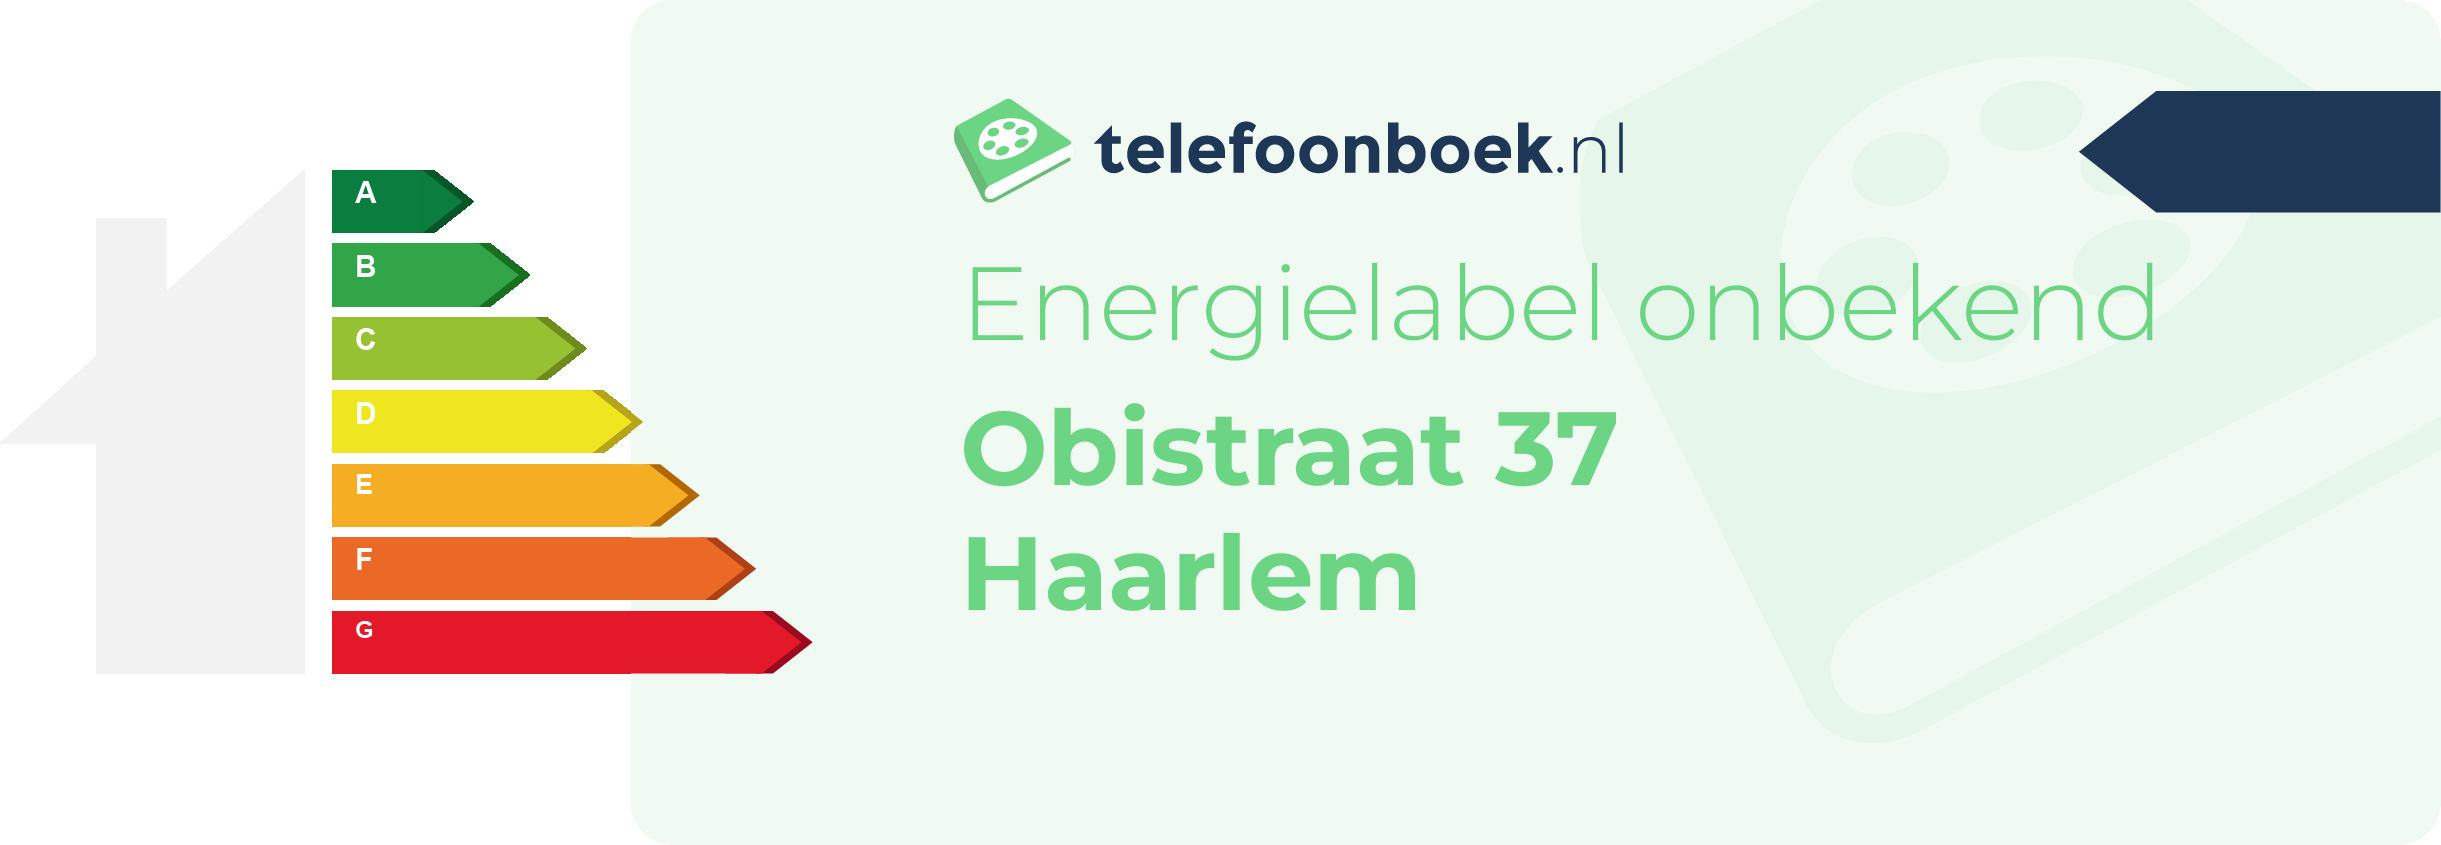 Energielabel Obistraat 37 Haarlem